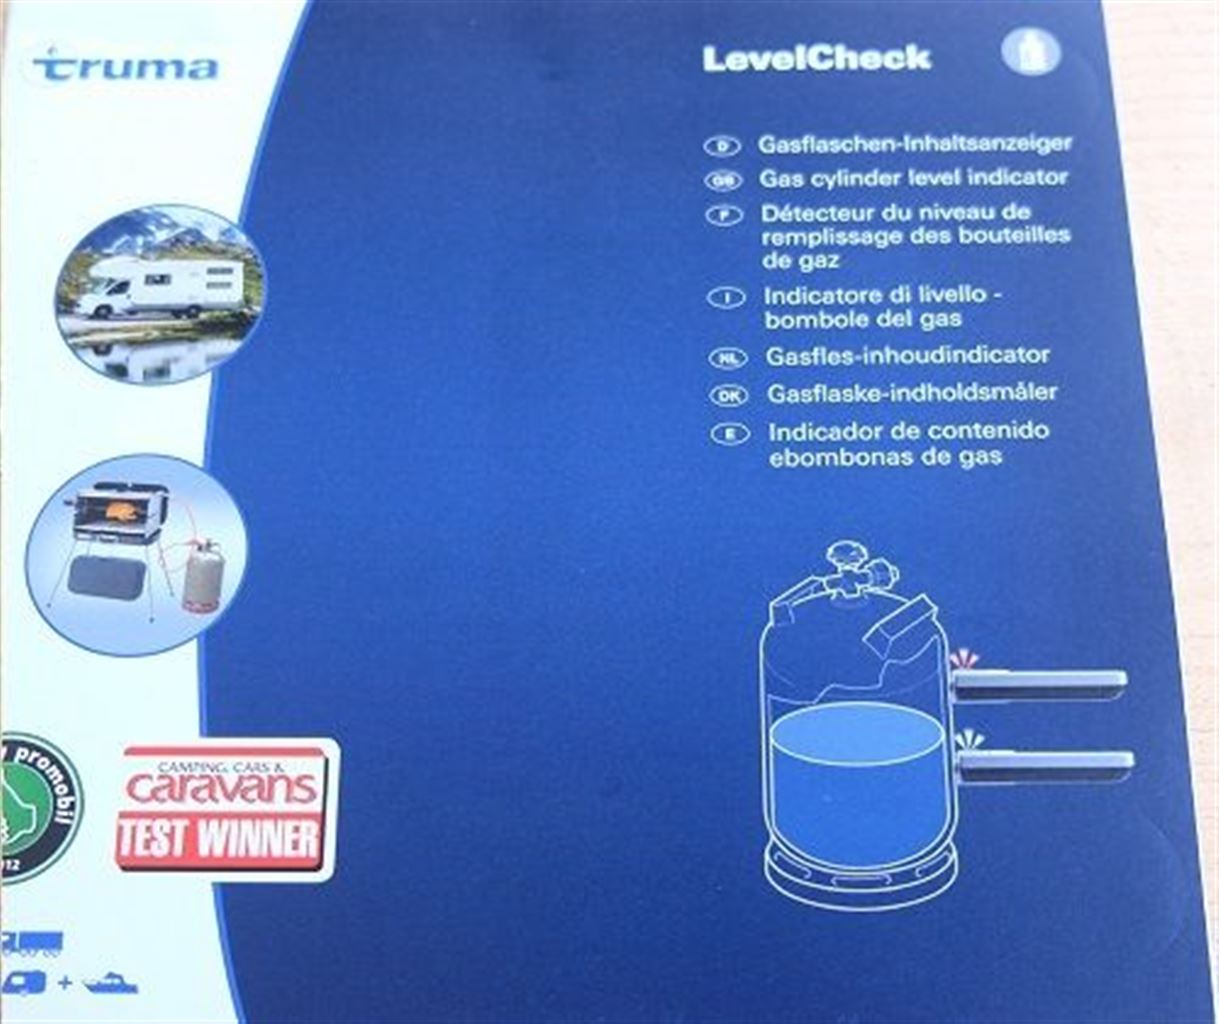 Truma Inhaltsanzeige für Gasflaschen Level Check